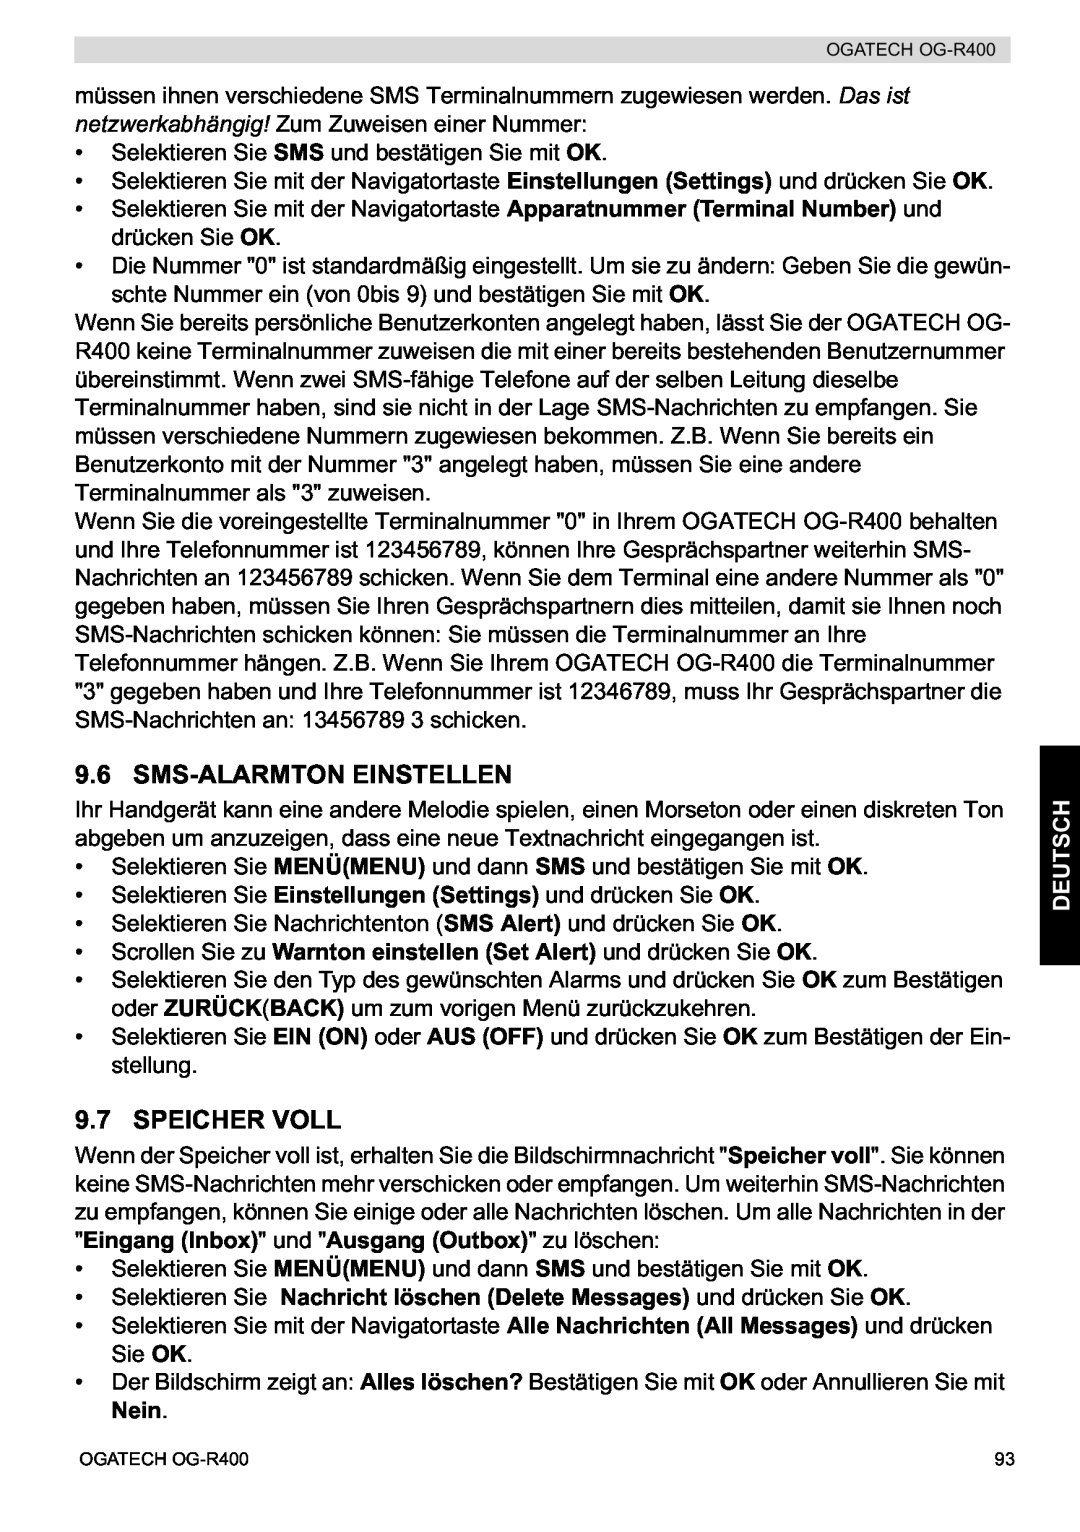 Topcom OG-R400 manual Sms-Alarmton Einstellen, Speicher Voll, Deutsch 